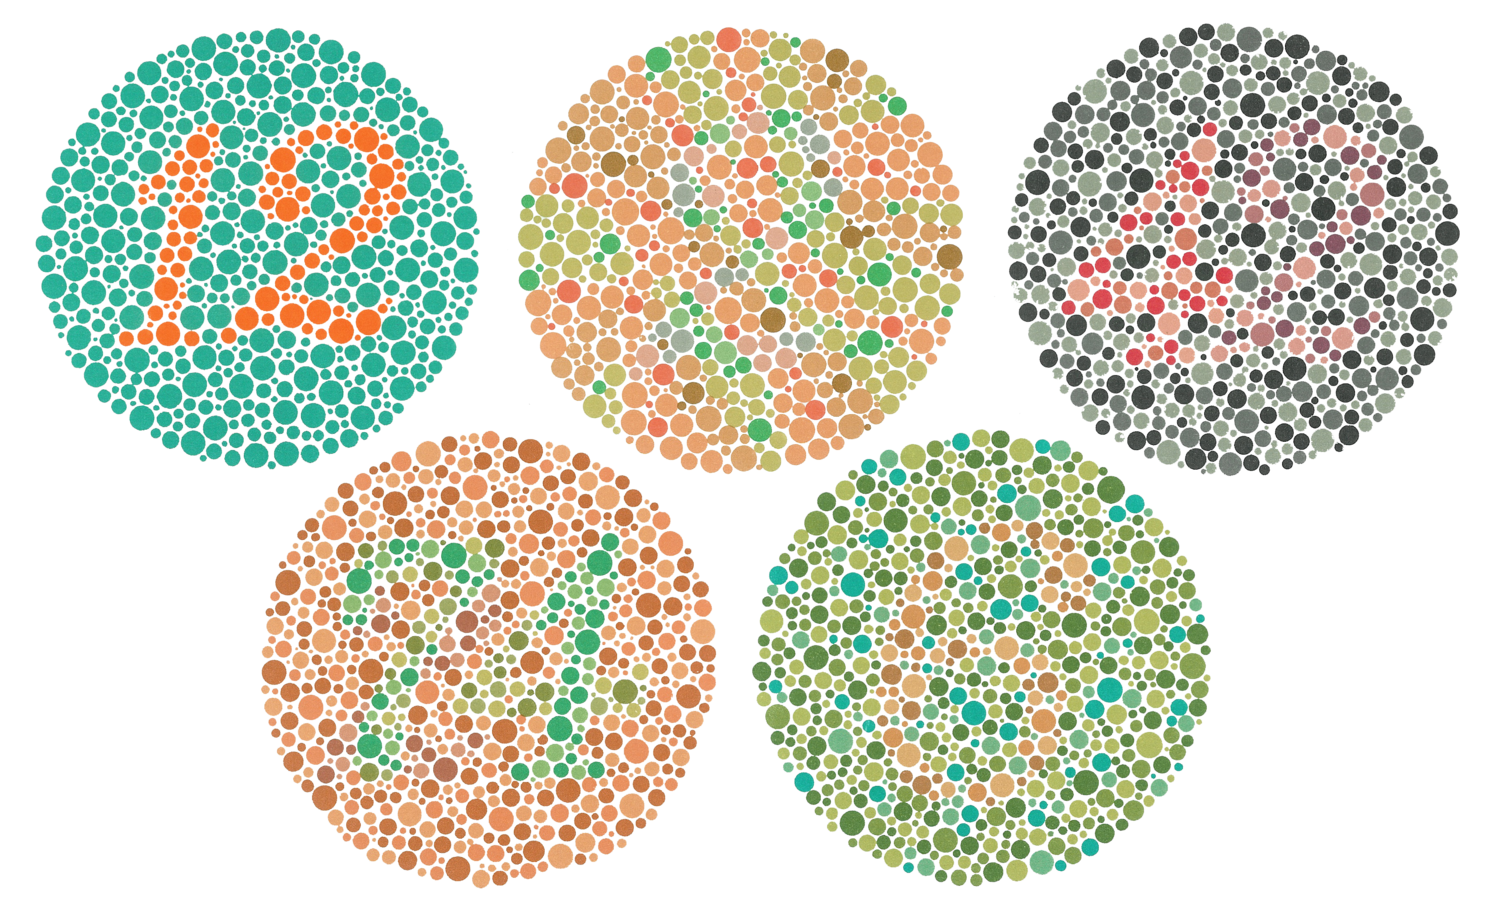 Дальтоники дейтеранопия. Таблица Рабкина и Ишихара. Colorblind дальтонизм. Дальтонизм ахроматопсия. Способен различать цвета